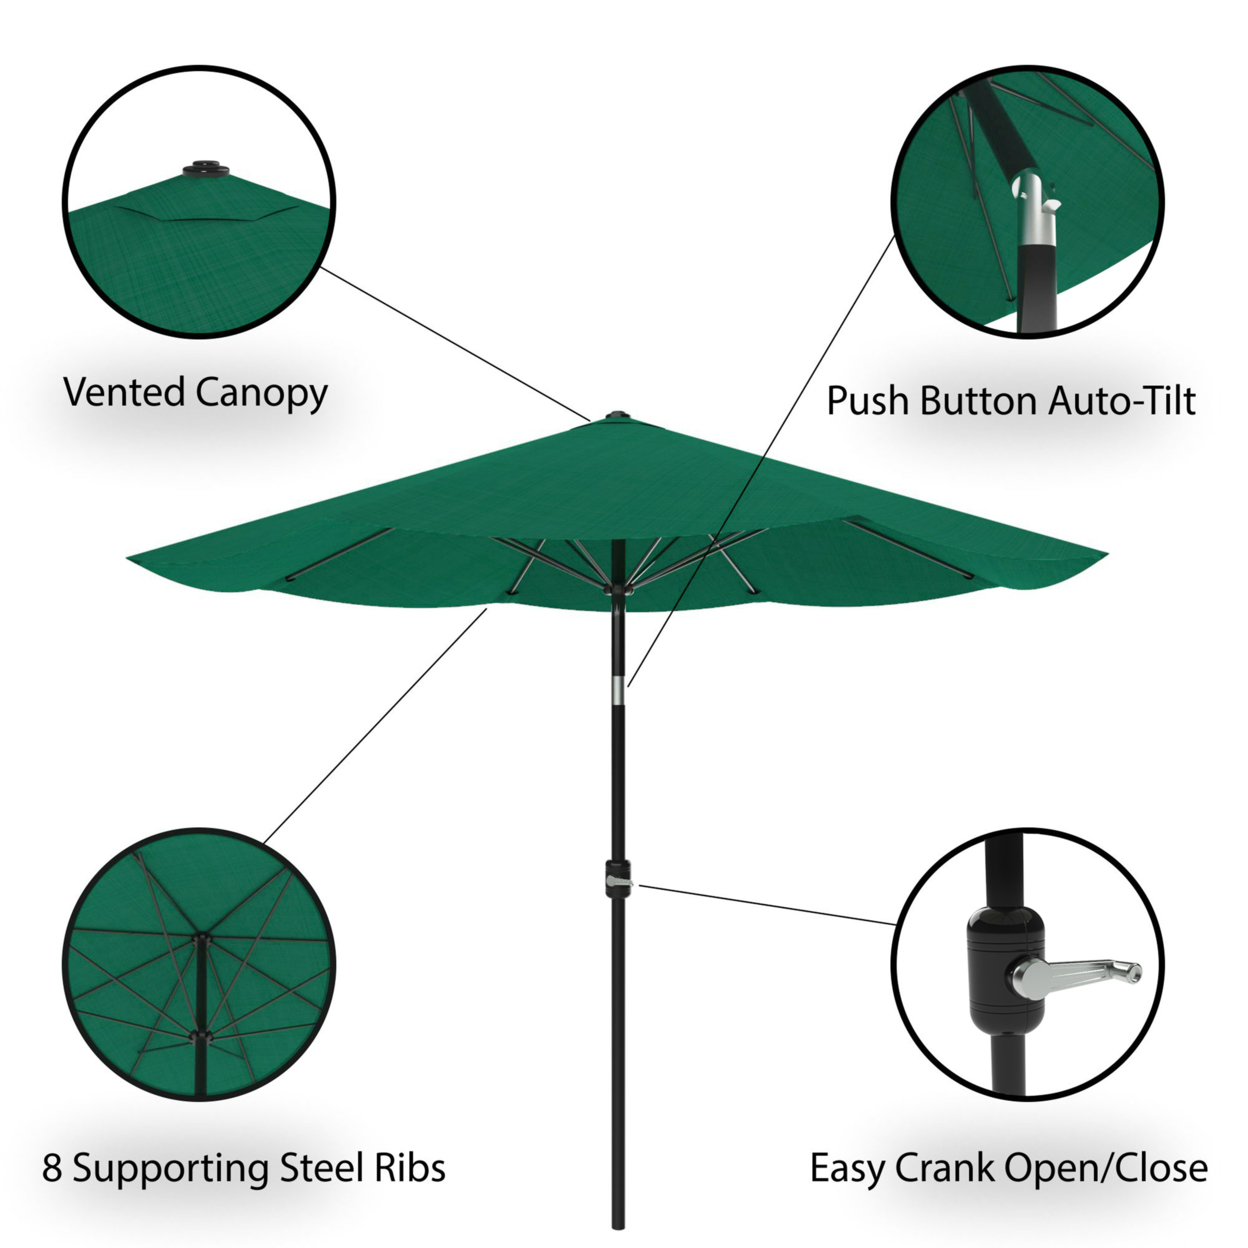 Patio Umbrella With Auto Tilt- Easy Crank Outdoor Table Umbrella Shade 10 Ft Hunter Green